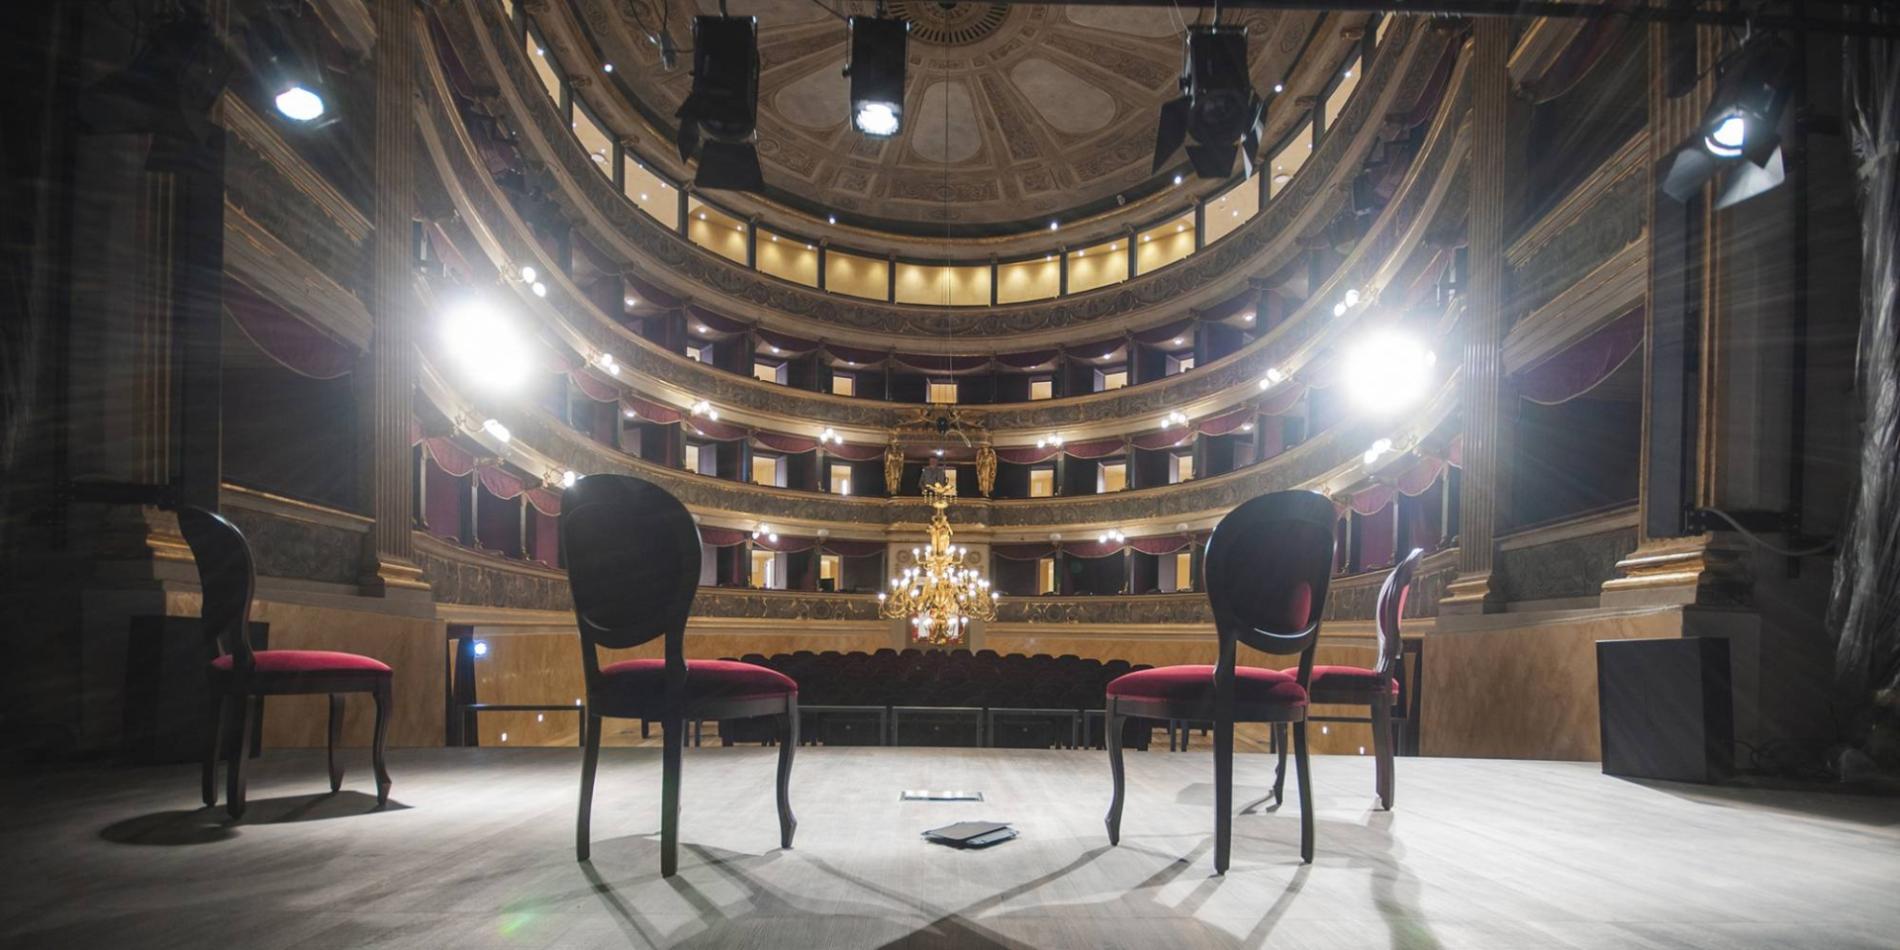 Teatro Marenco, per l’inaugurazione un melting pot di tutte le arti